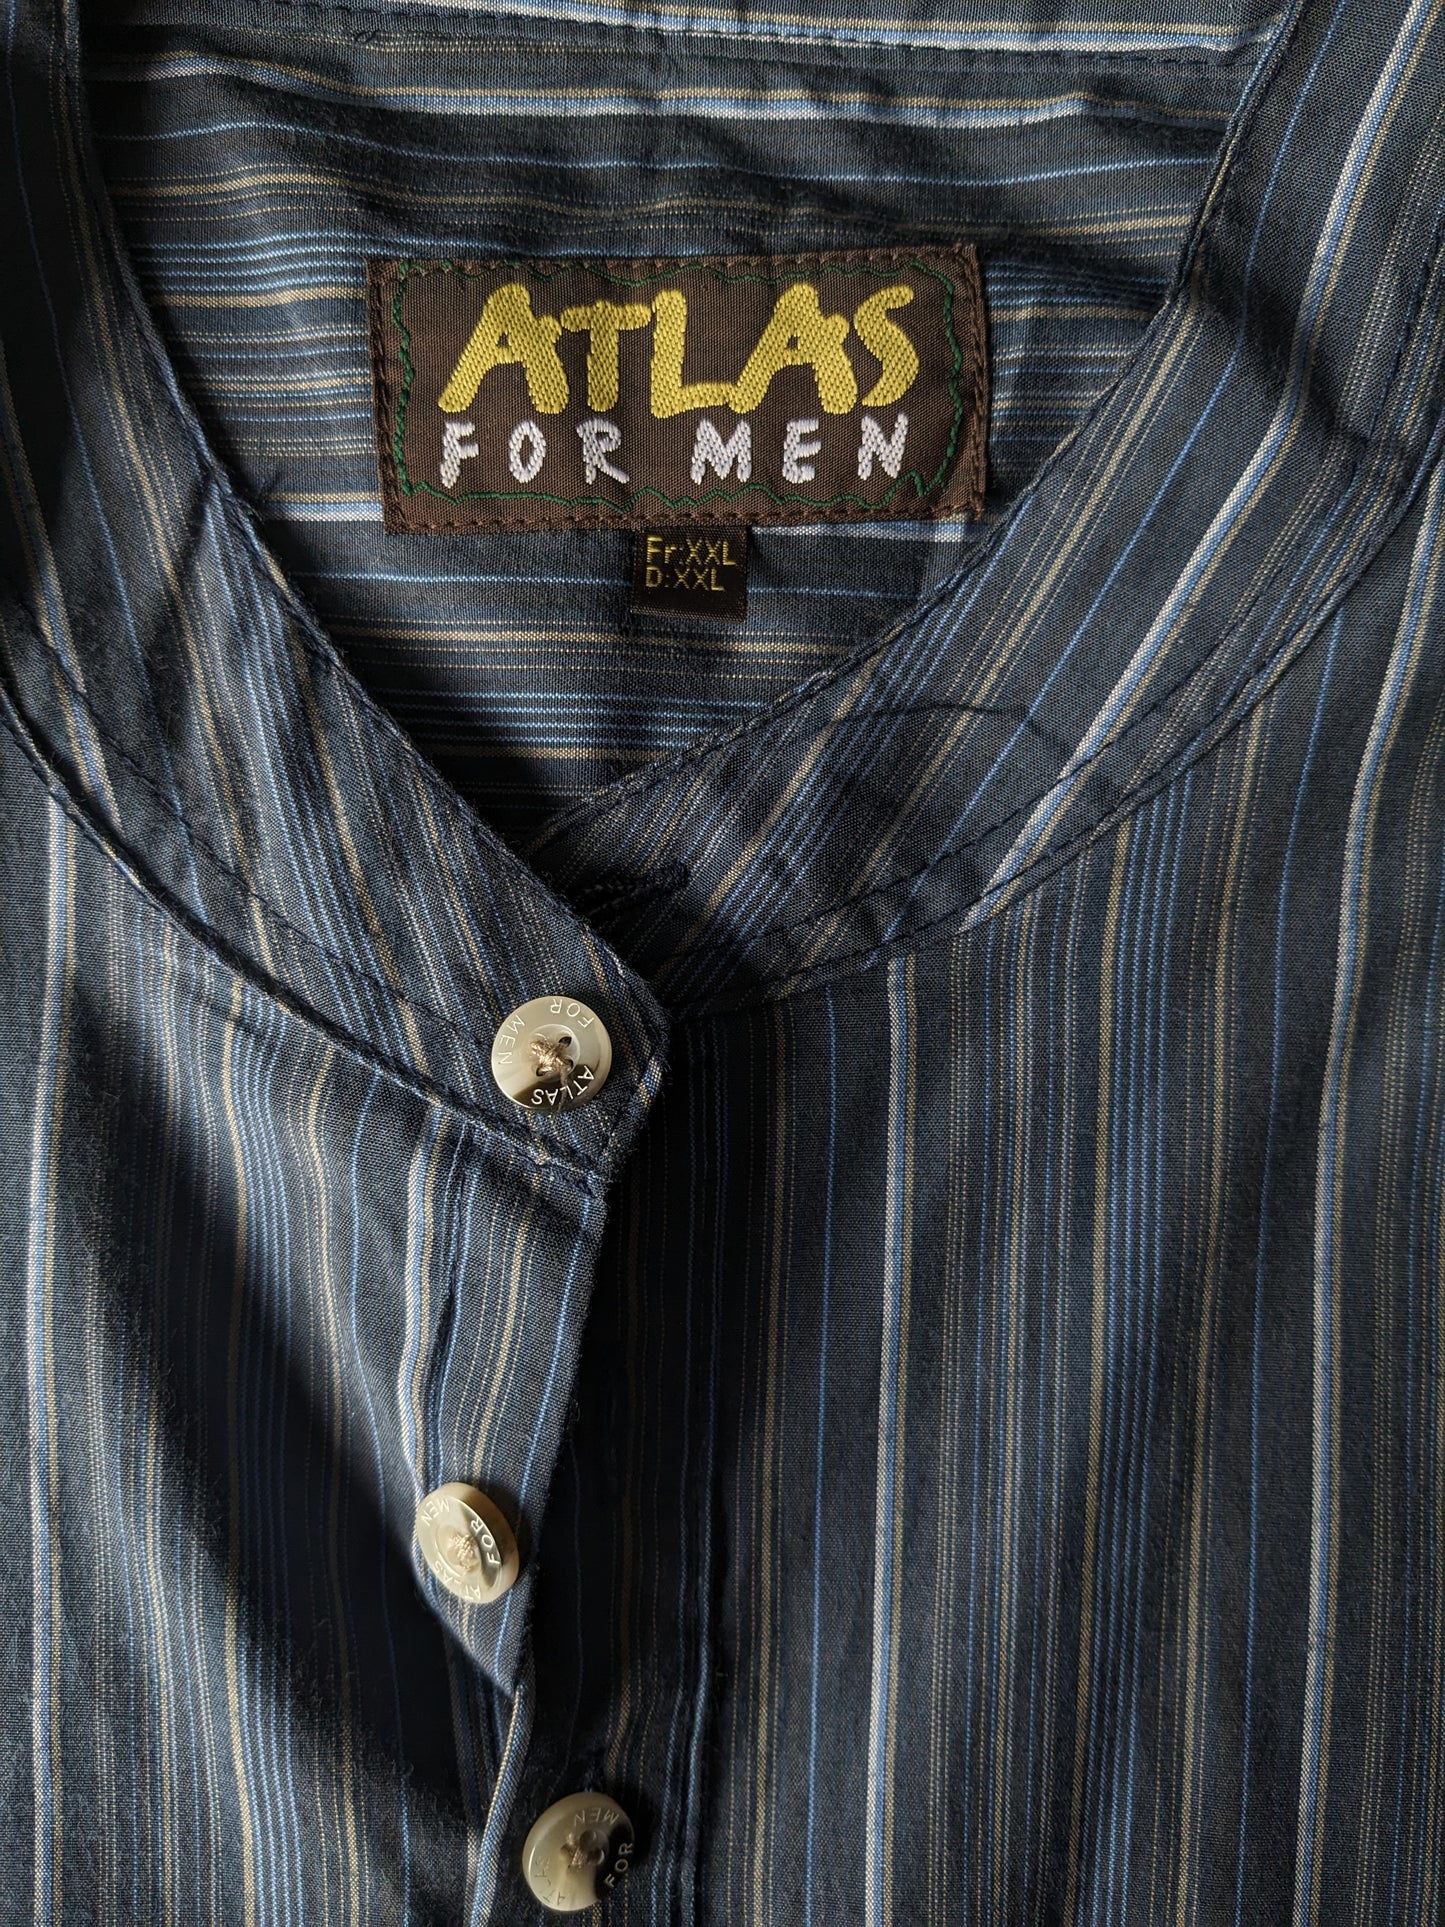 Atlas for men overhemd-shirt met opstaande / boeren / mao kraag. Blauw Bruin gestreept. Maat 2XL / XXL.